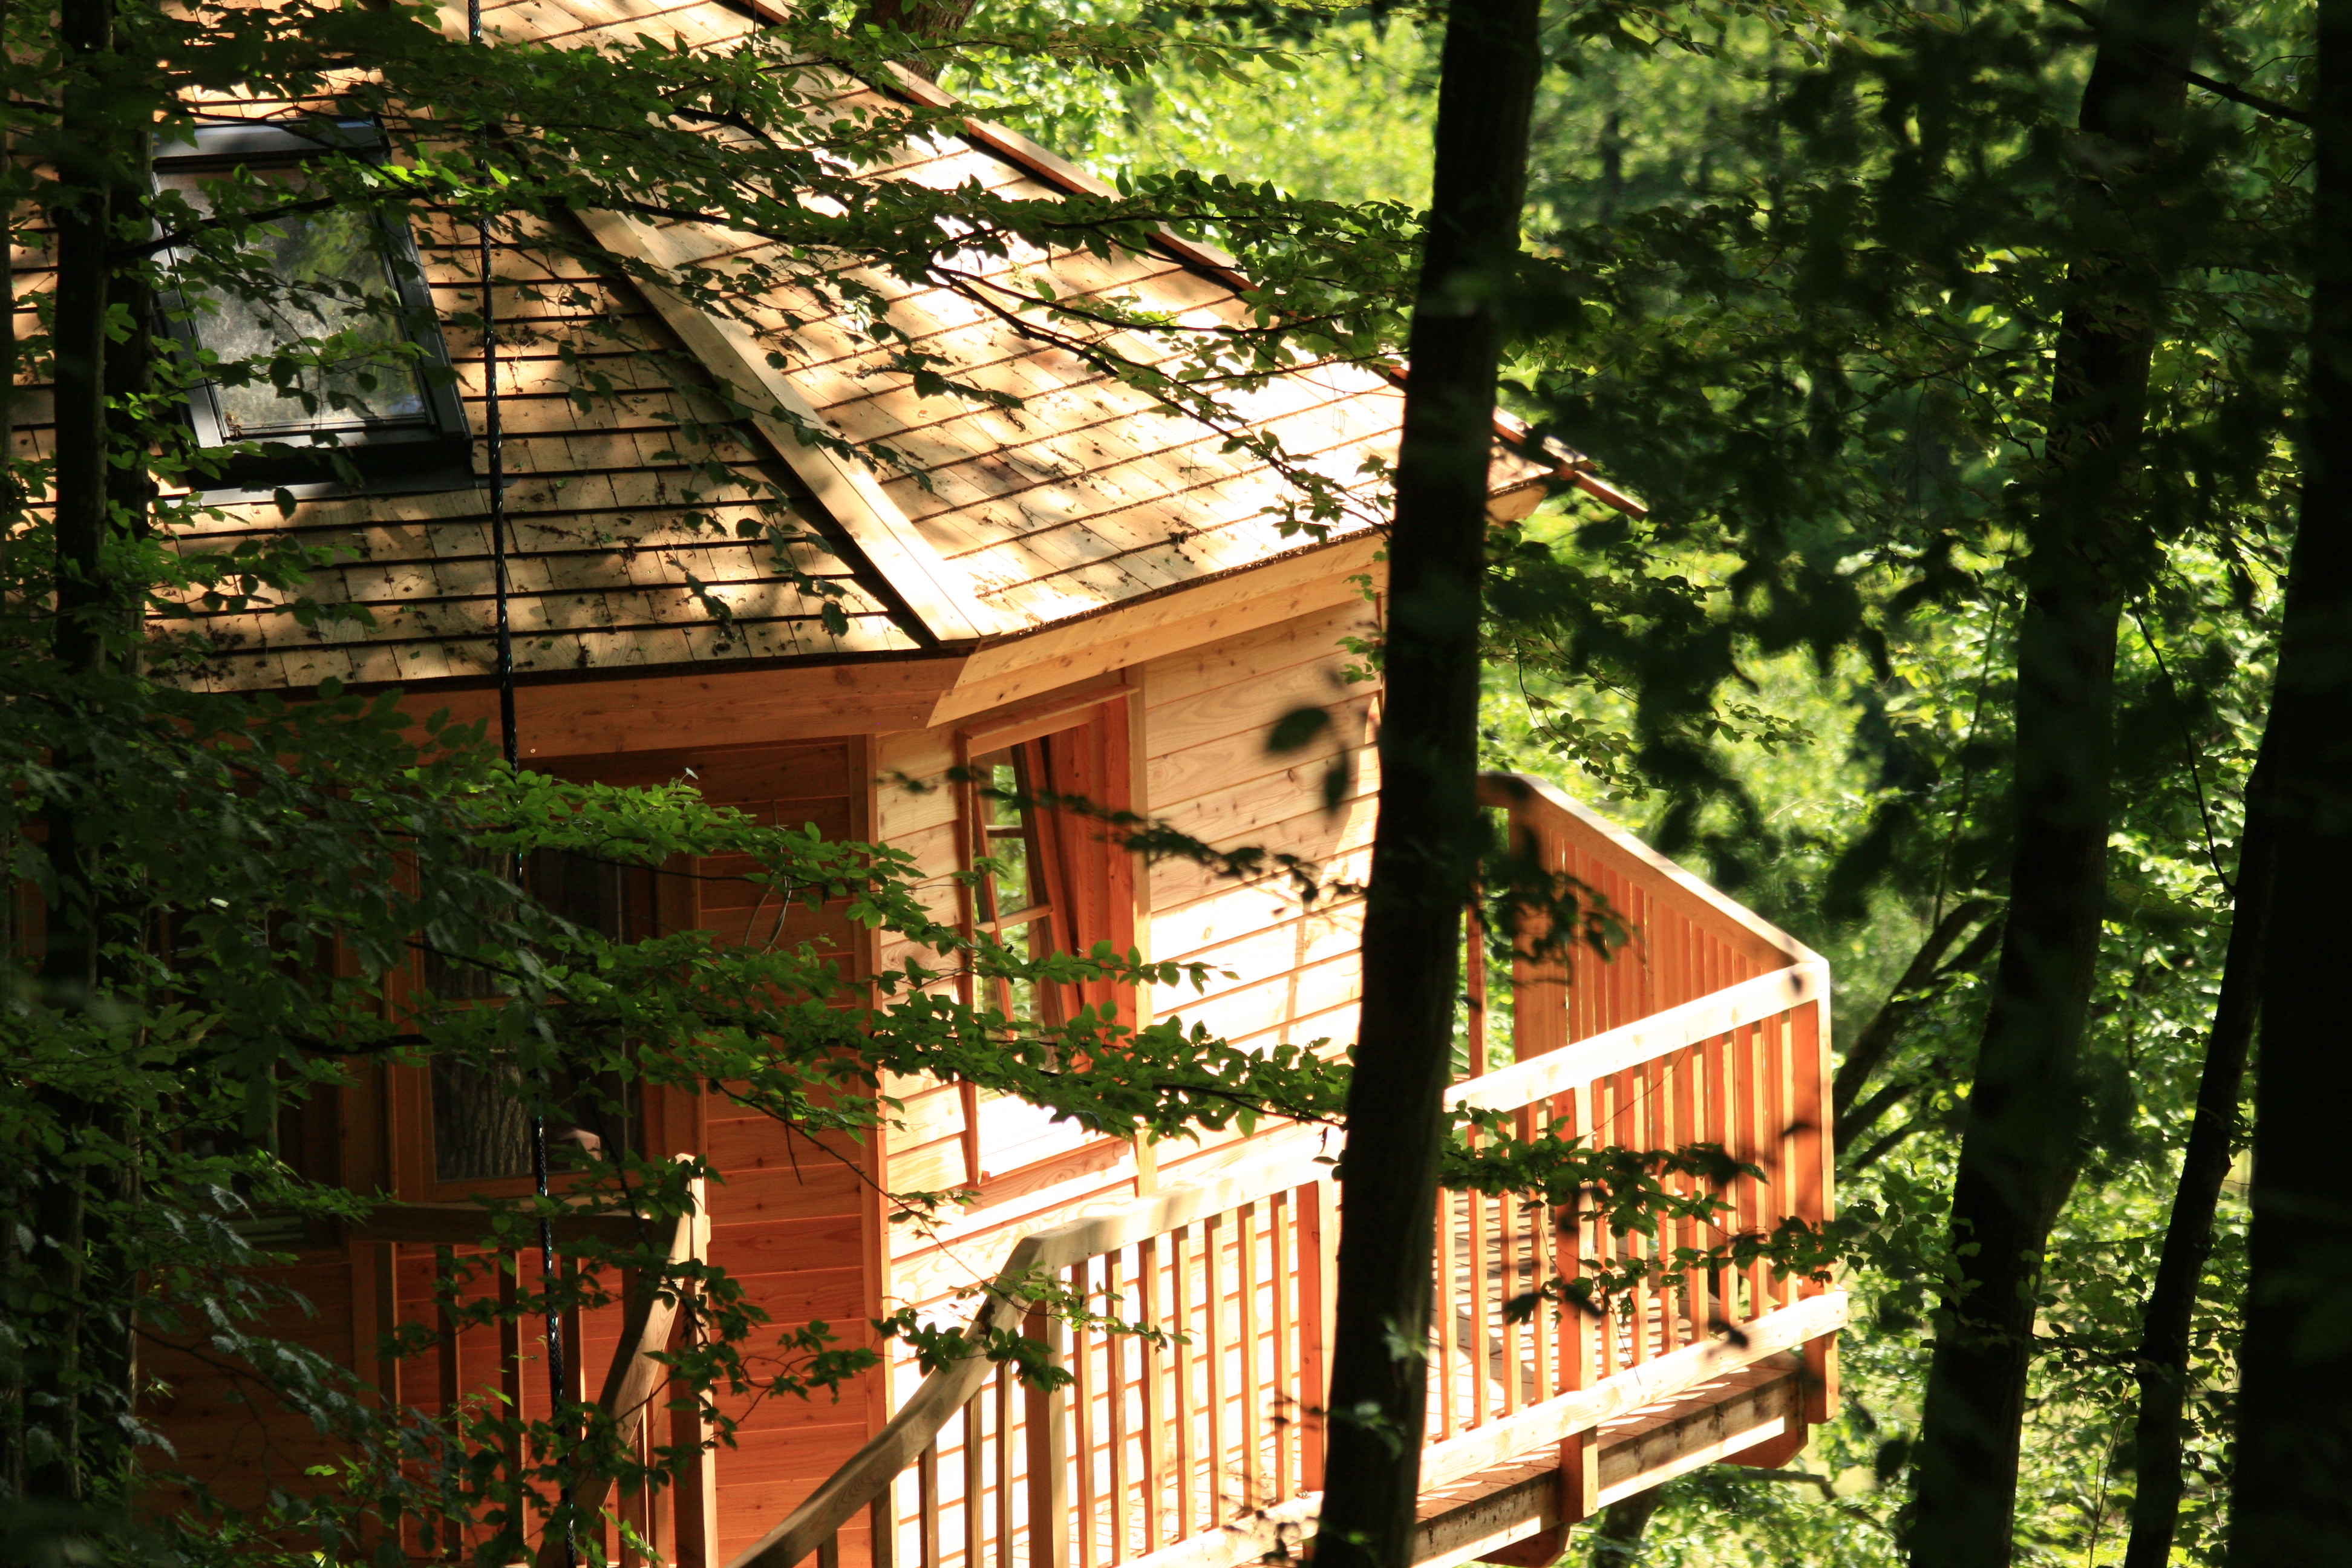 The treehousehotel “Baumhaushotel Seemühle” in Gräfendorf, Germany